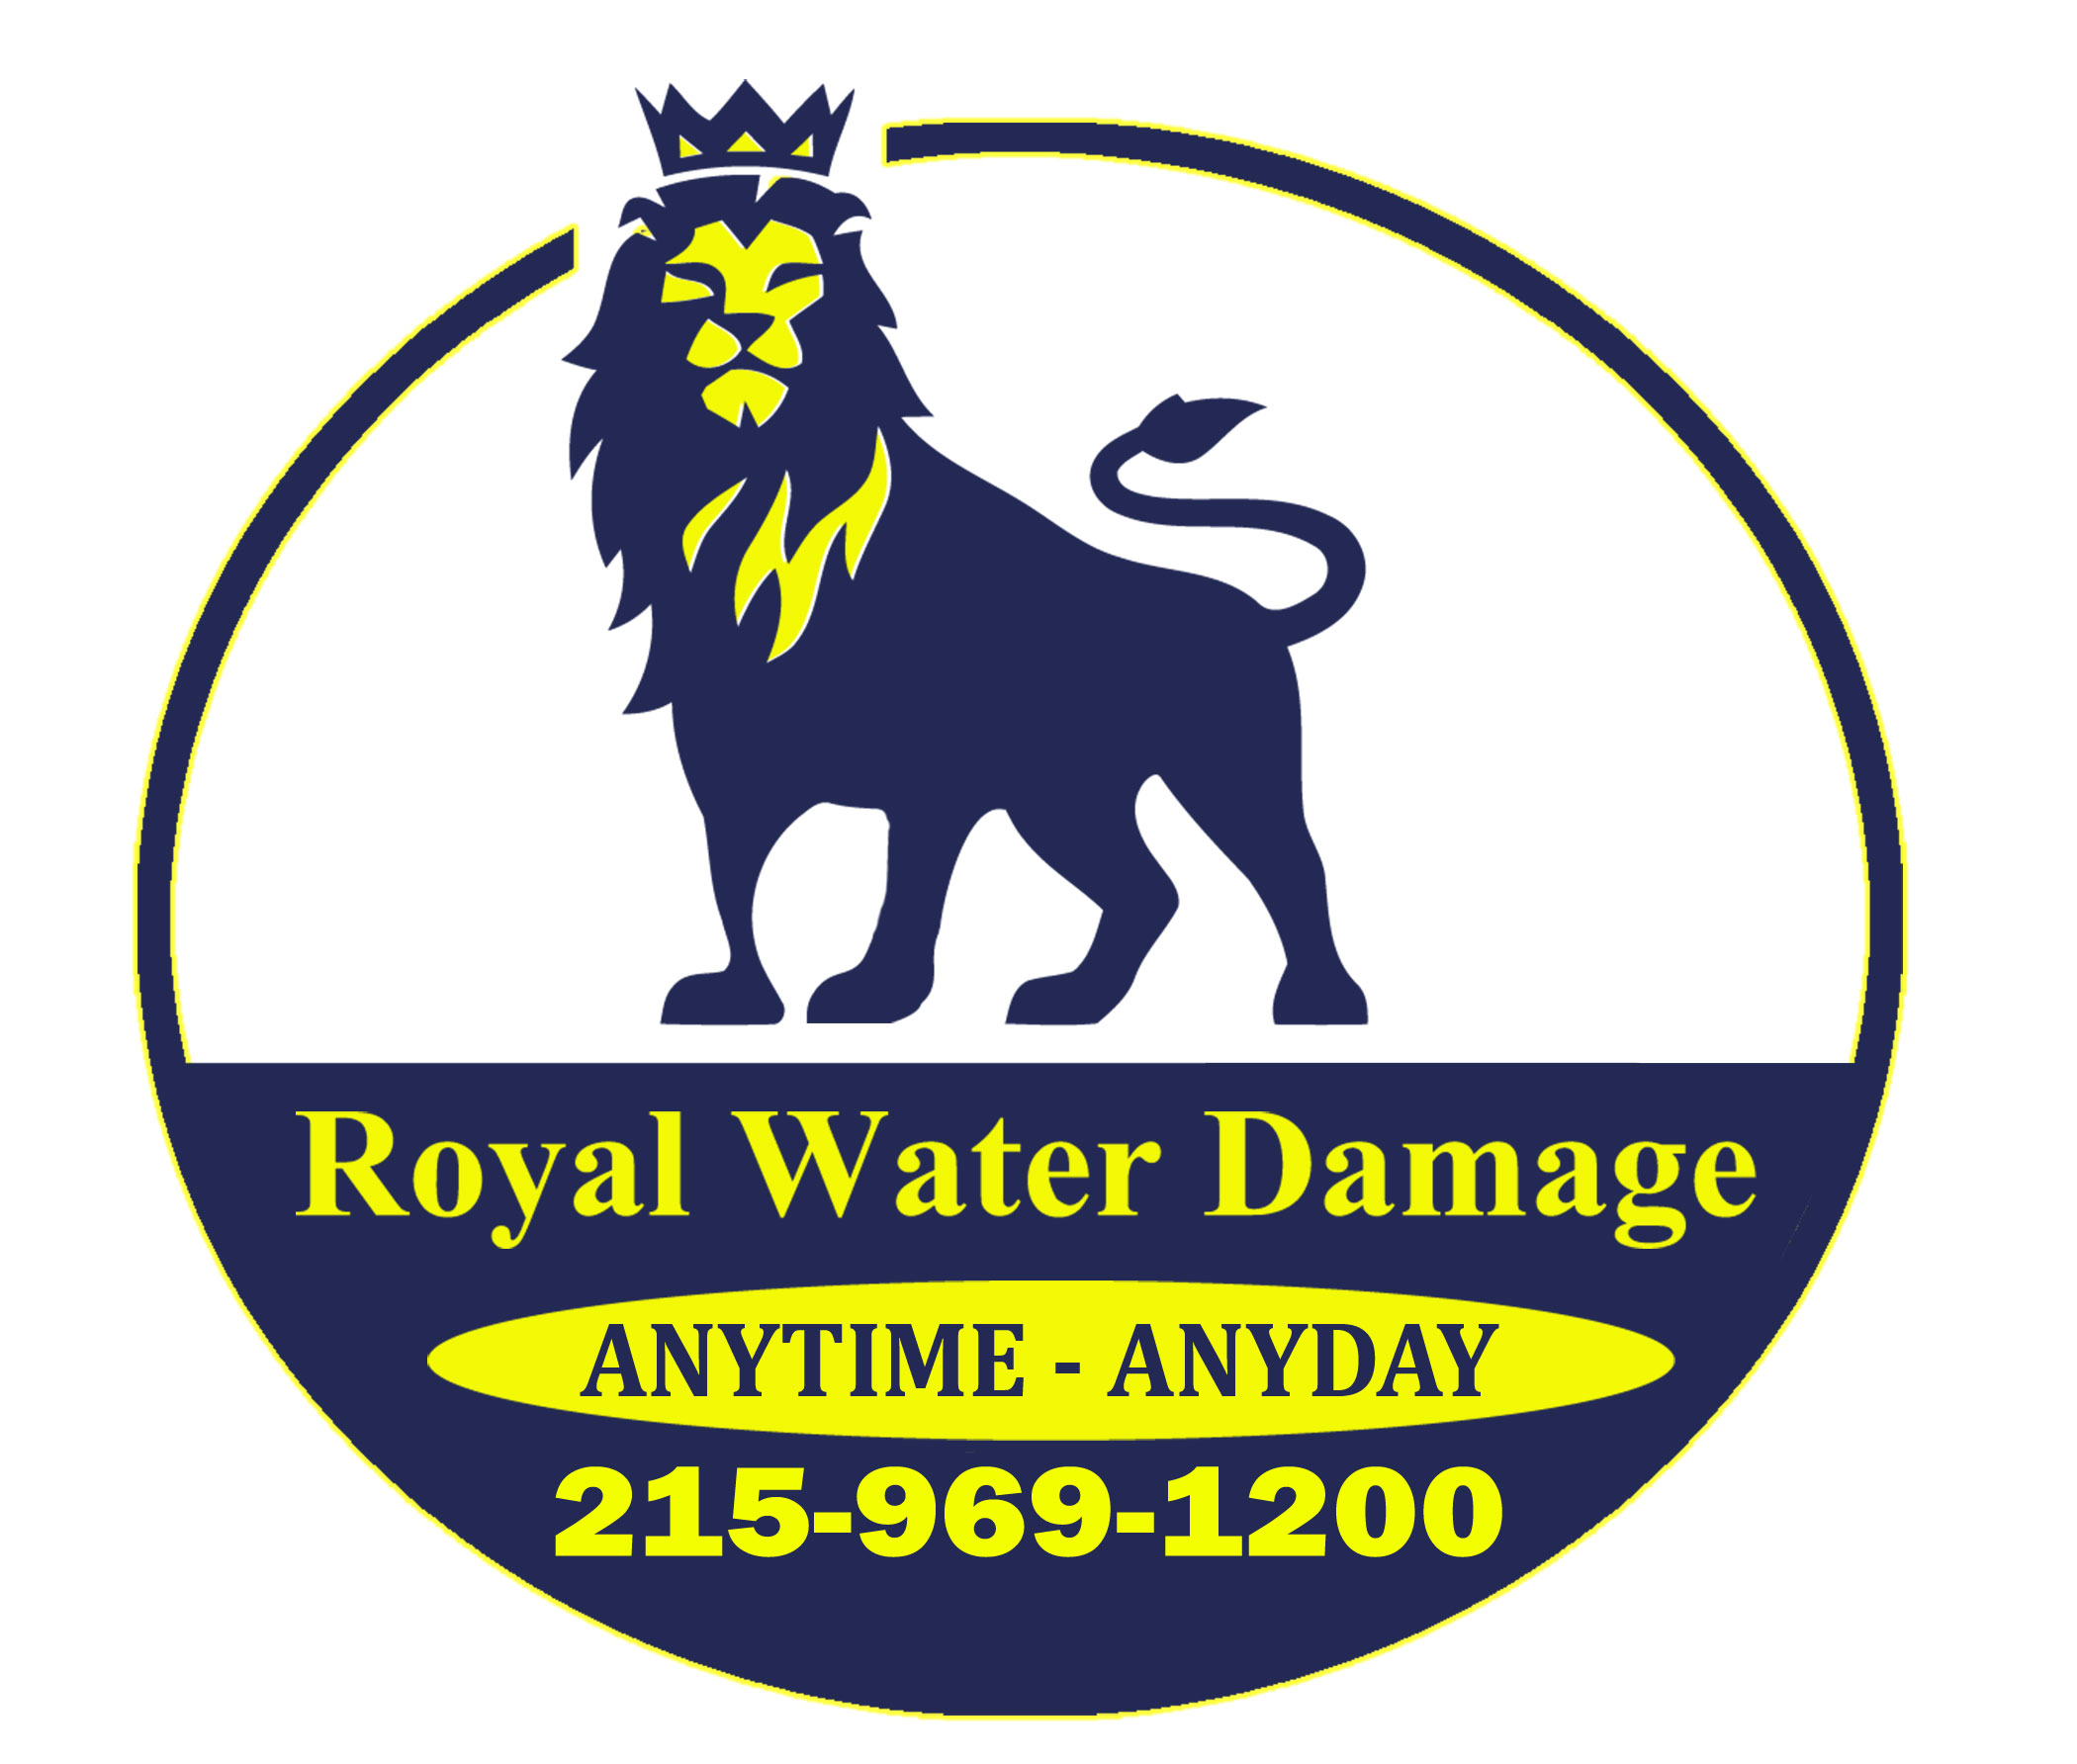 Royal Water Damage Philadelphia